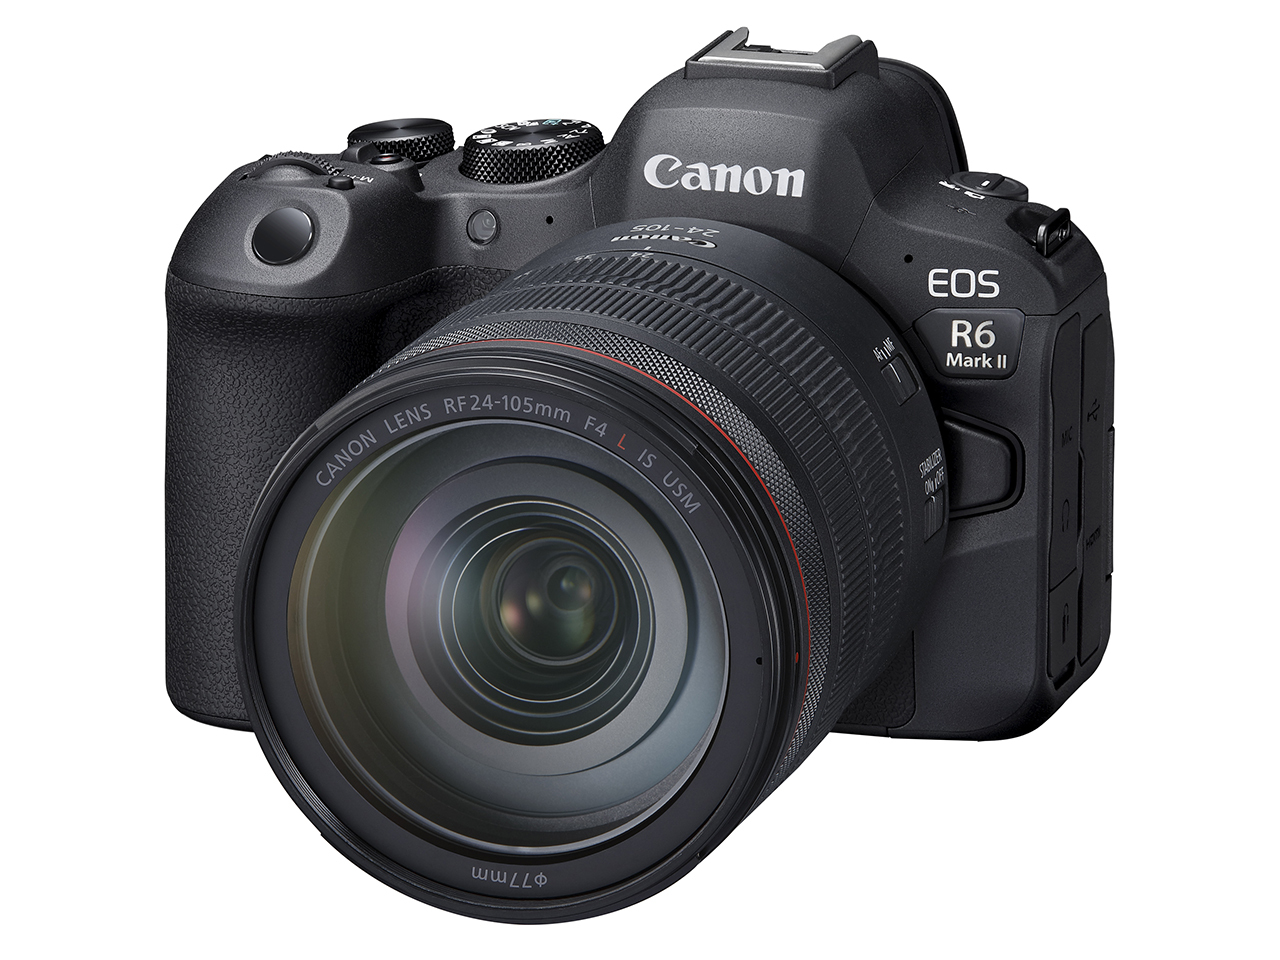 キヤノン、フルサイズミラーレスカメラ「EOS R6 Mark II」発表--静止画